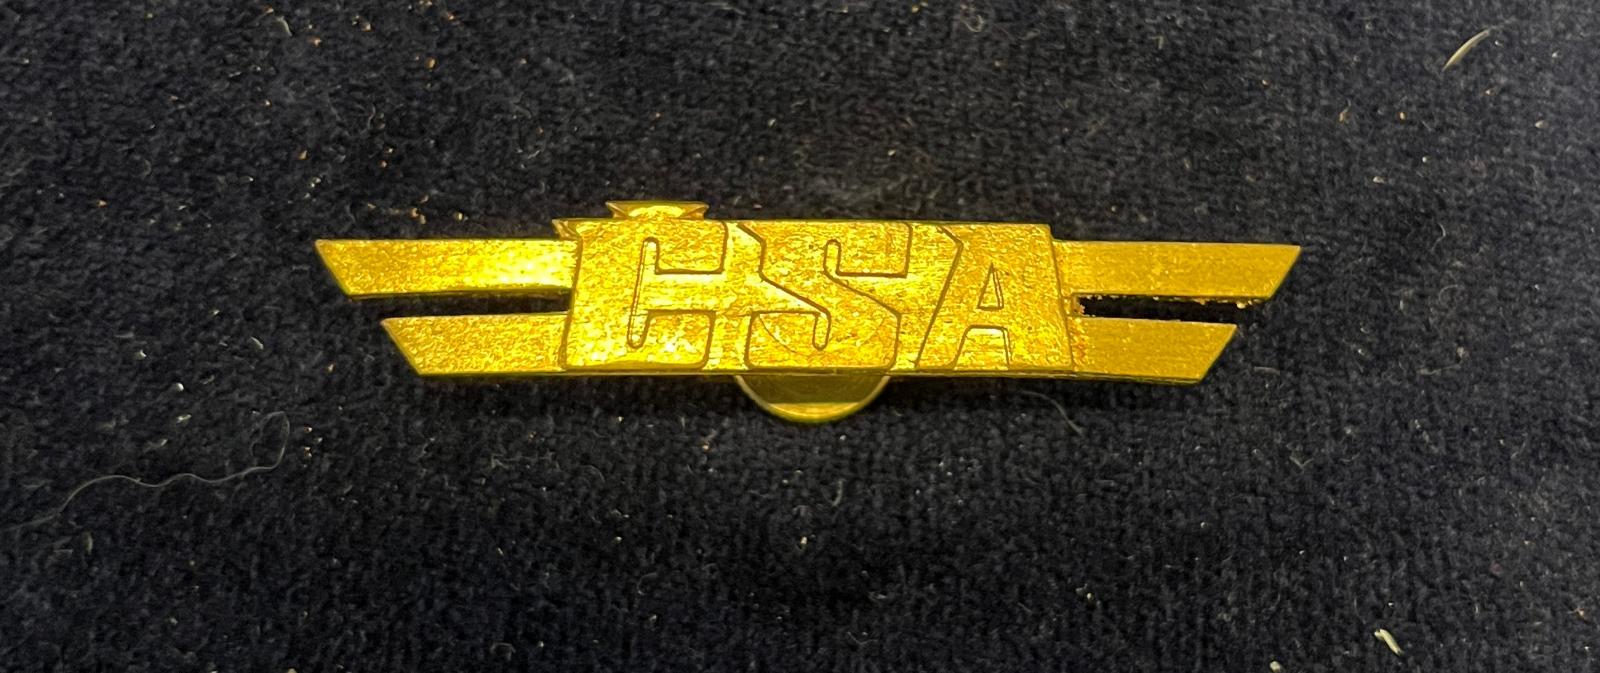 Letecký odznak ČSA 02 - Odznaky, nášivky a medaily